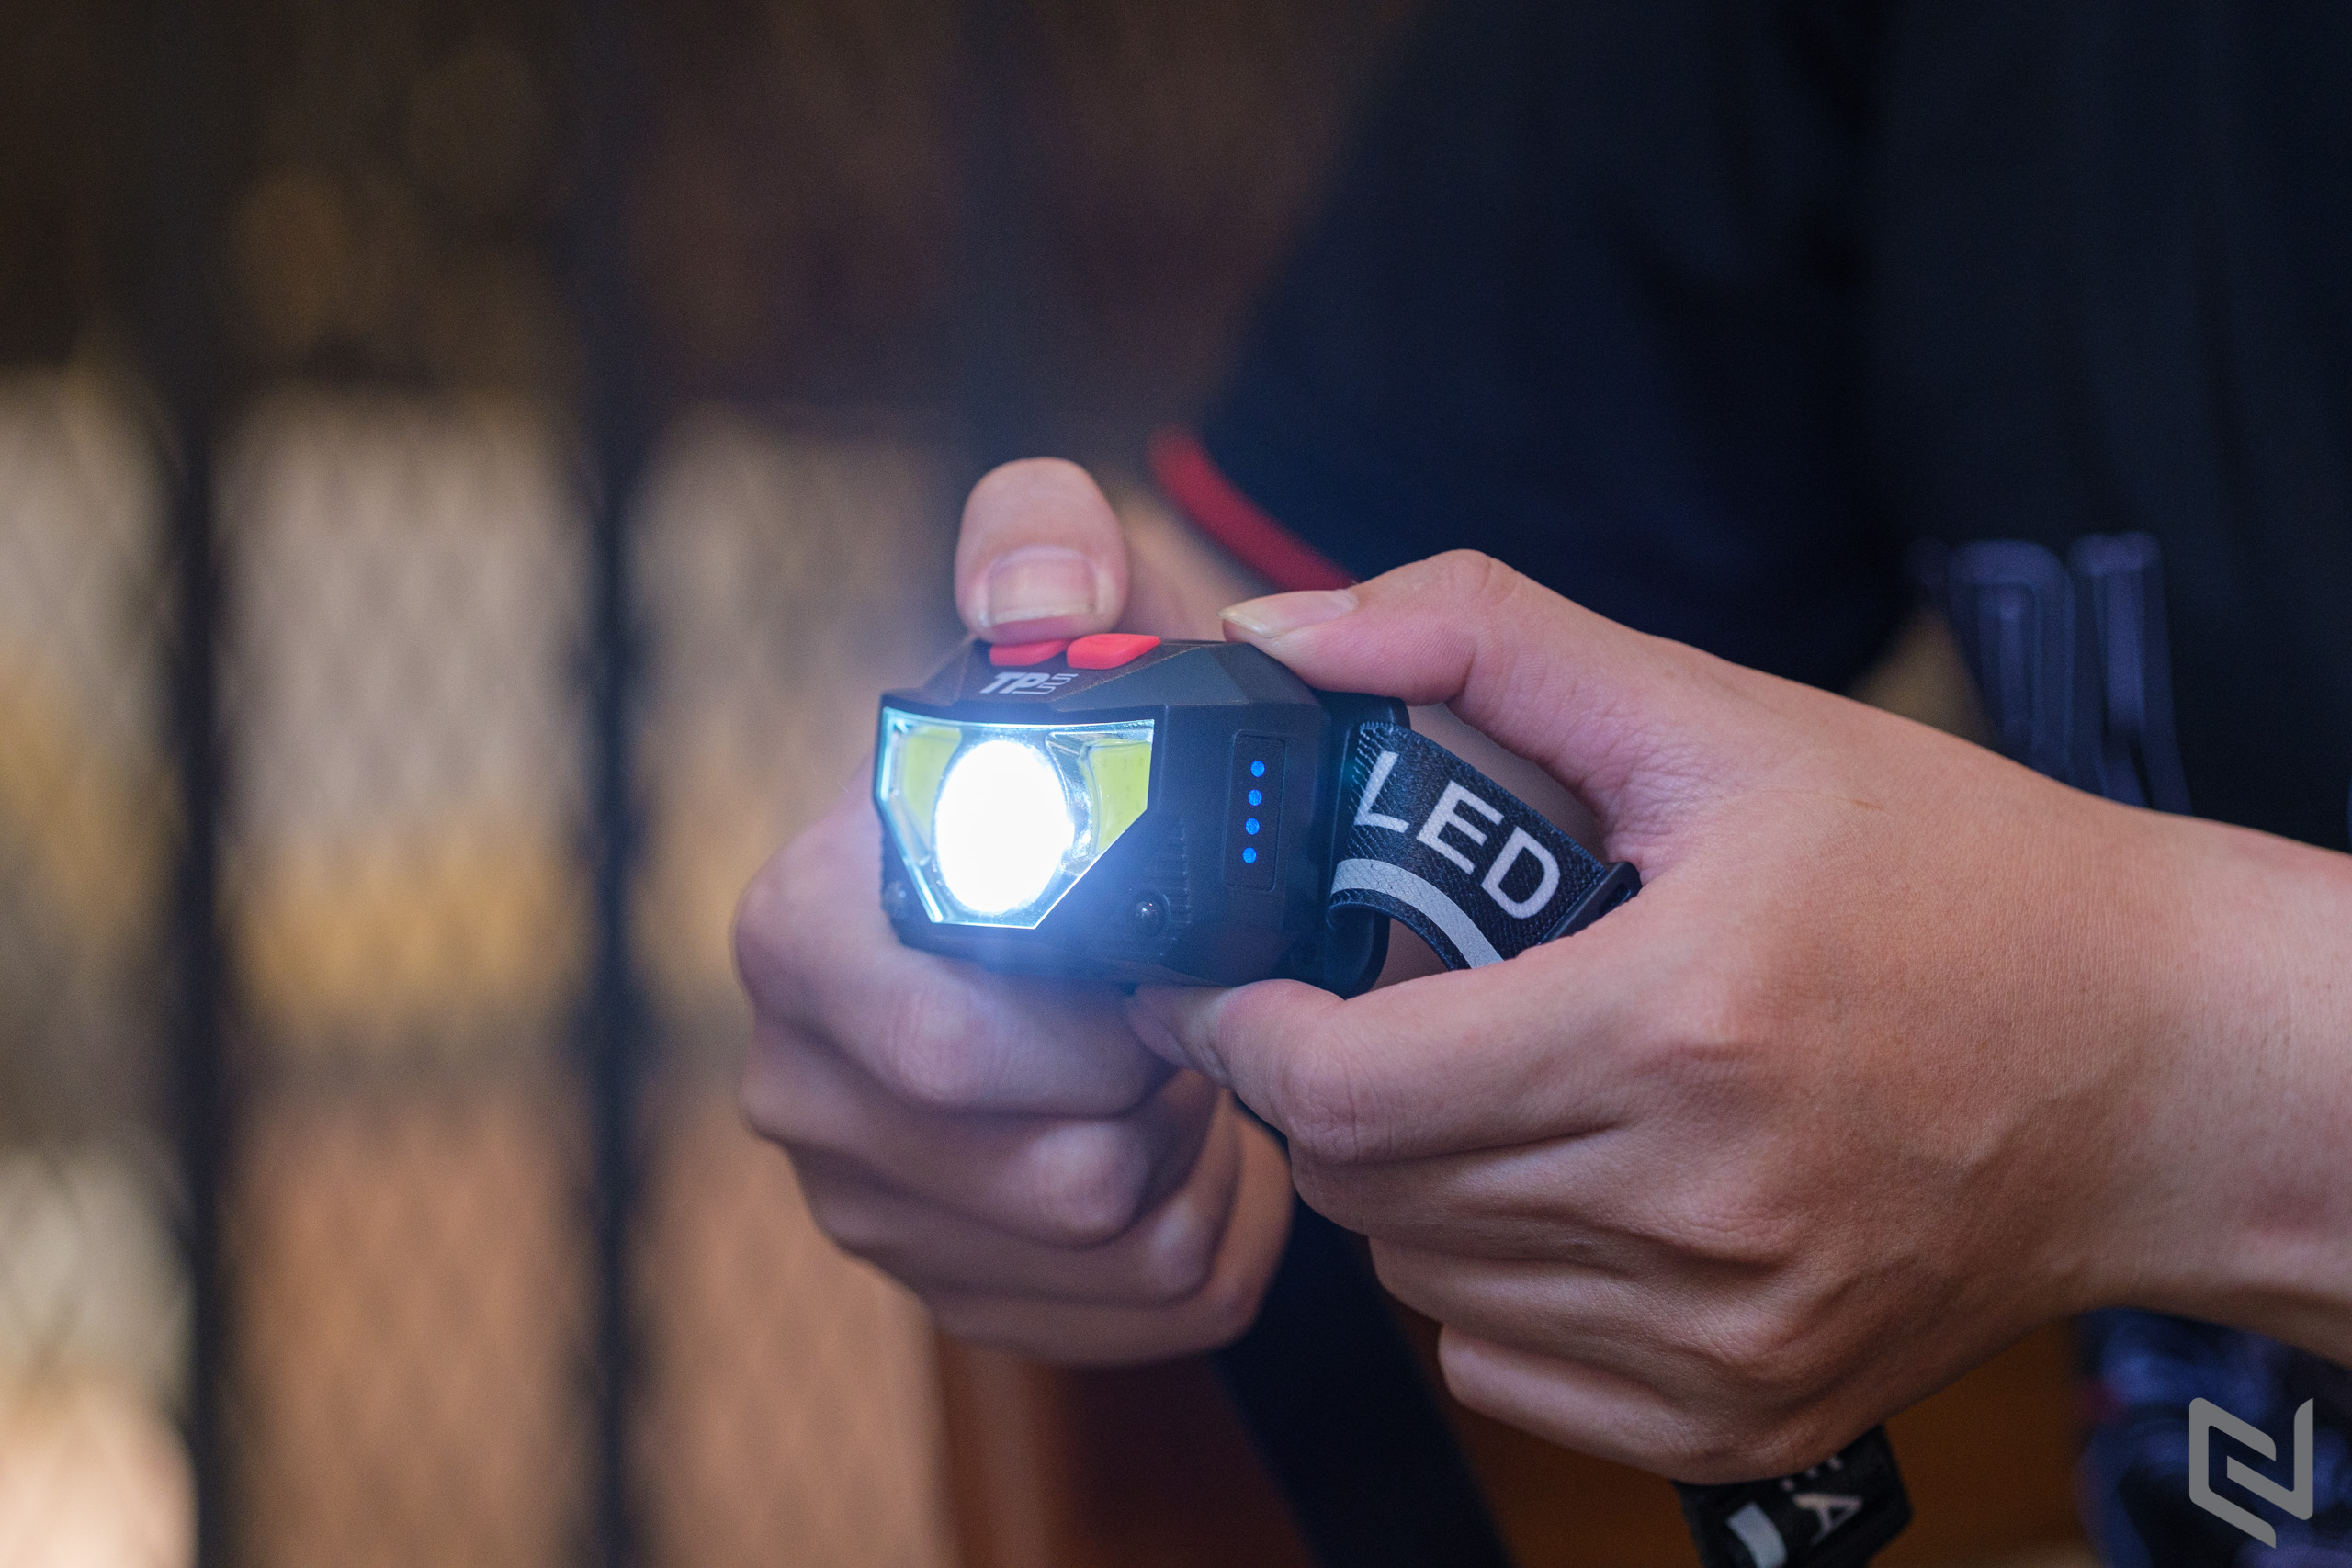 Trên tay Đèn pin đội đầu TPE, độ sáng 300Lm, nhiều chế độ chiếu sáng, có cảm biến tắt mở tiện lợi